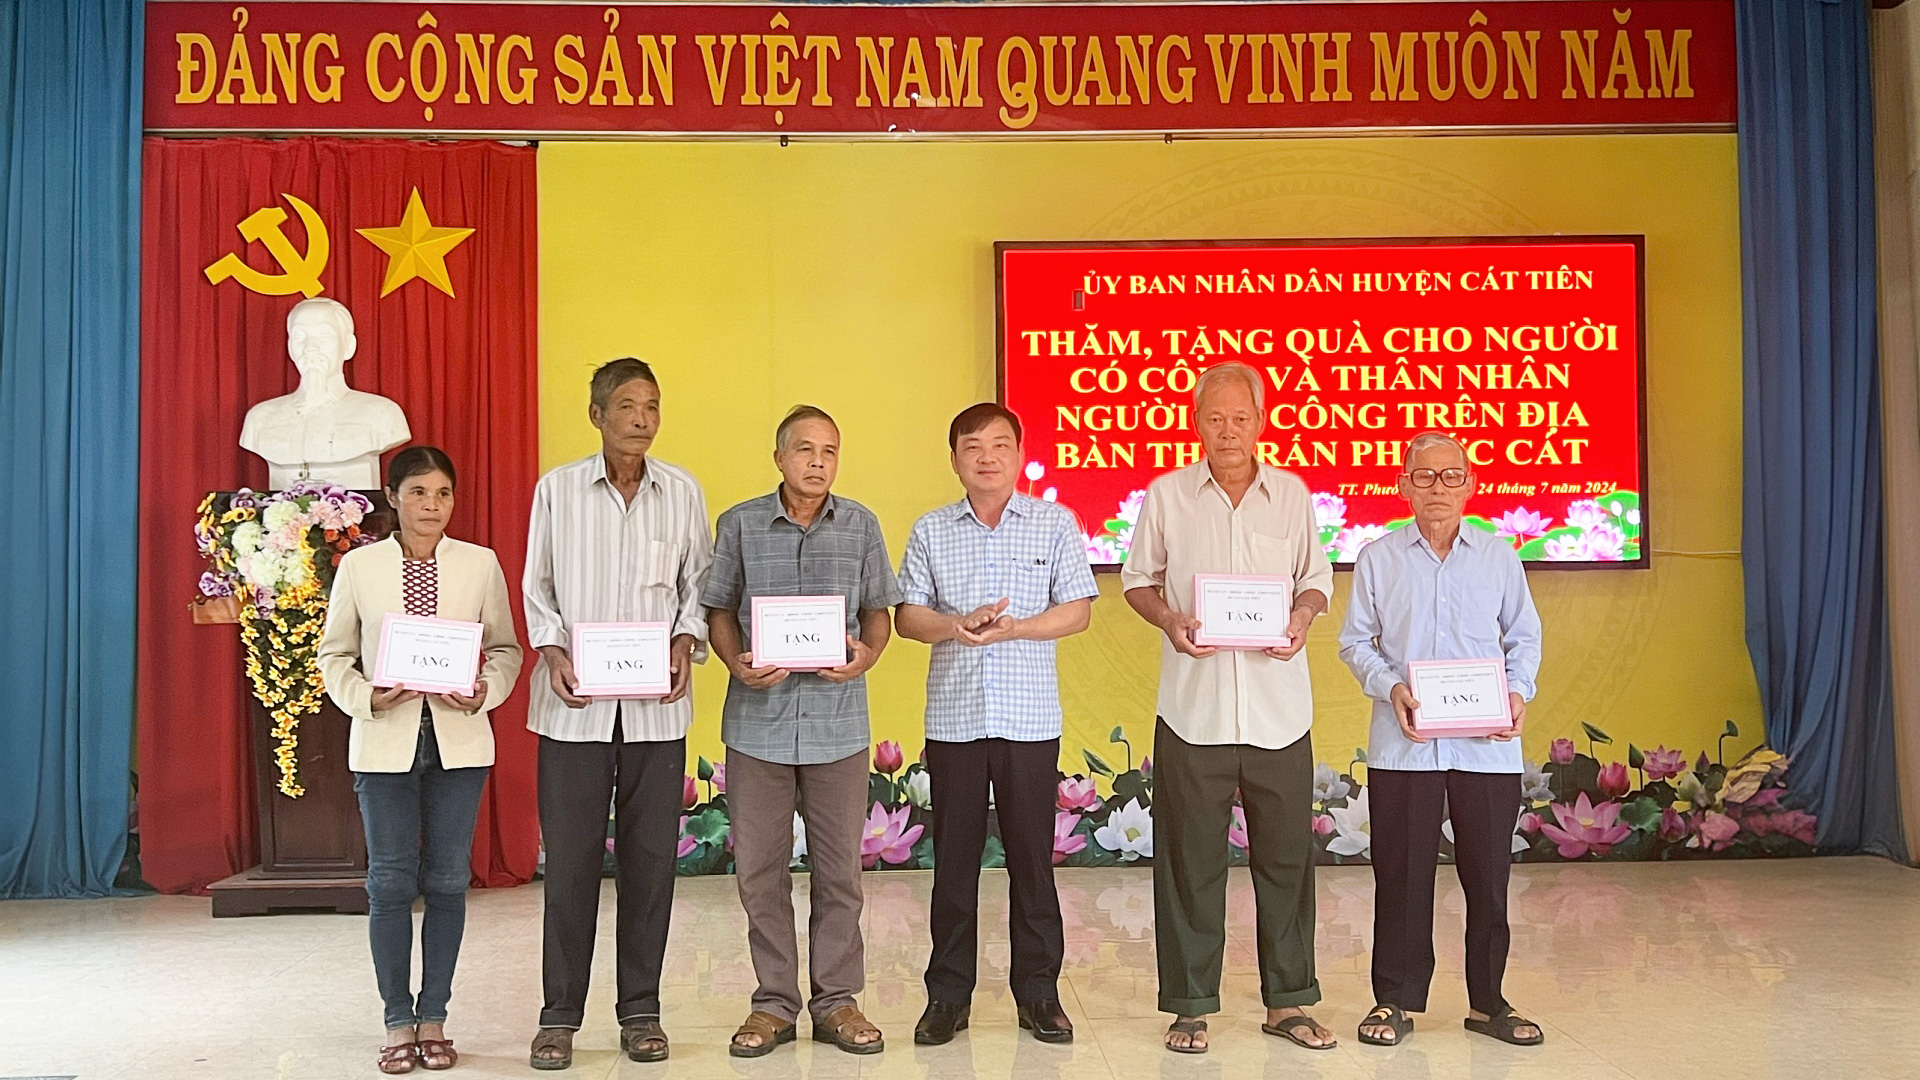 Chủ tịch UBND huyện Cát Tiên Nguyễn Hoàng Phúc trao quà cho các gia đình người có công tiêu biểu trên địa bàn